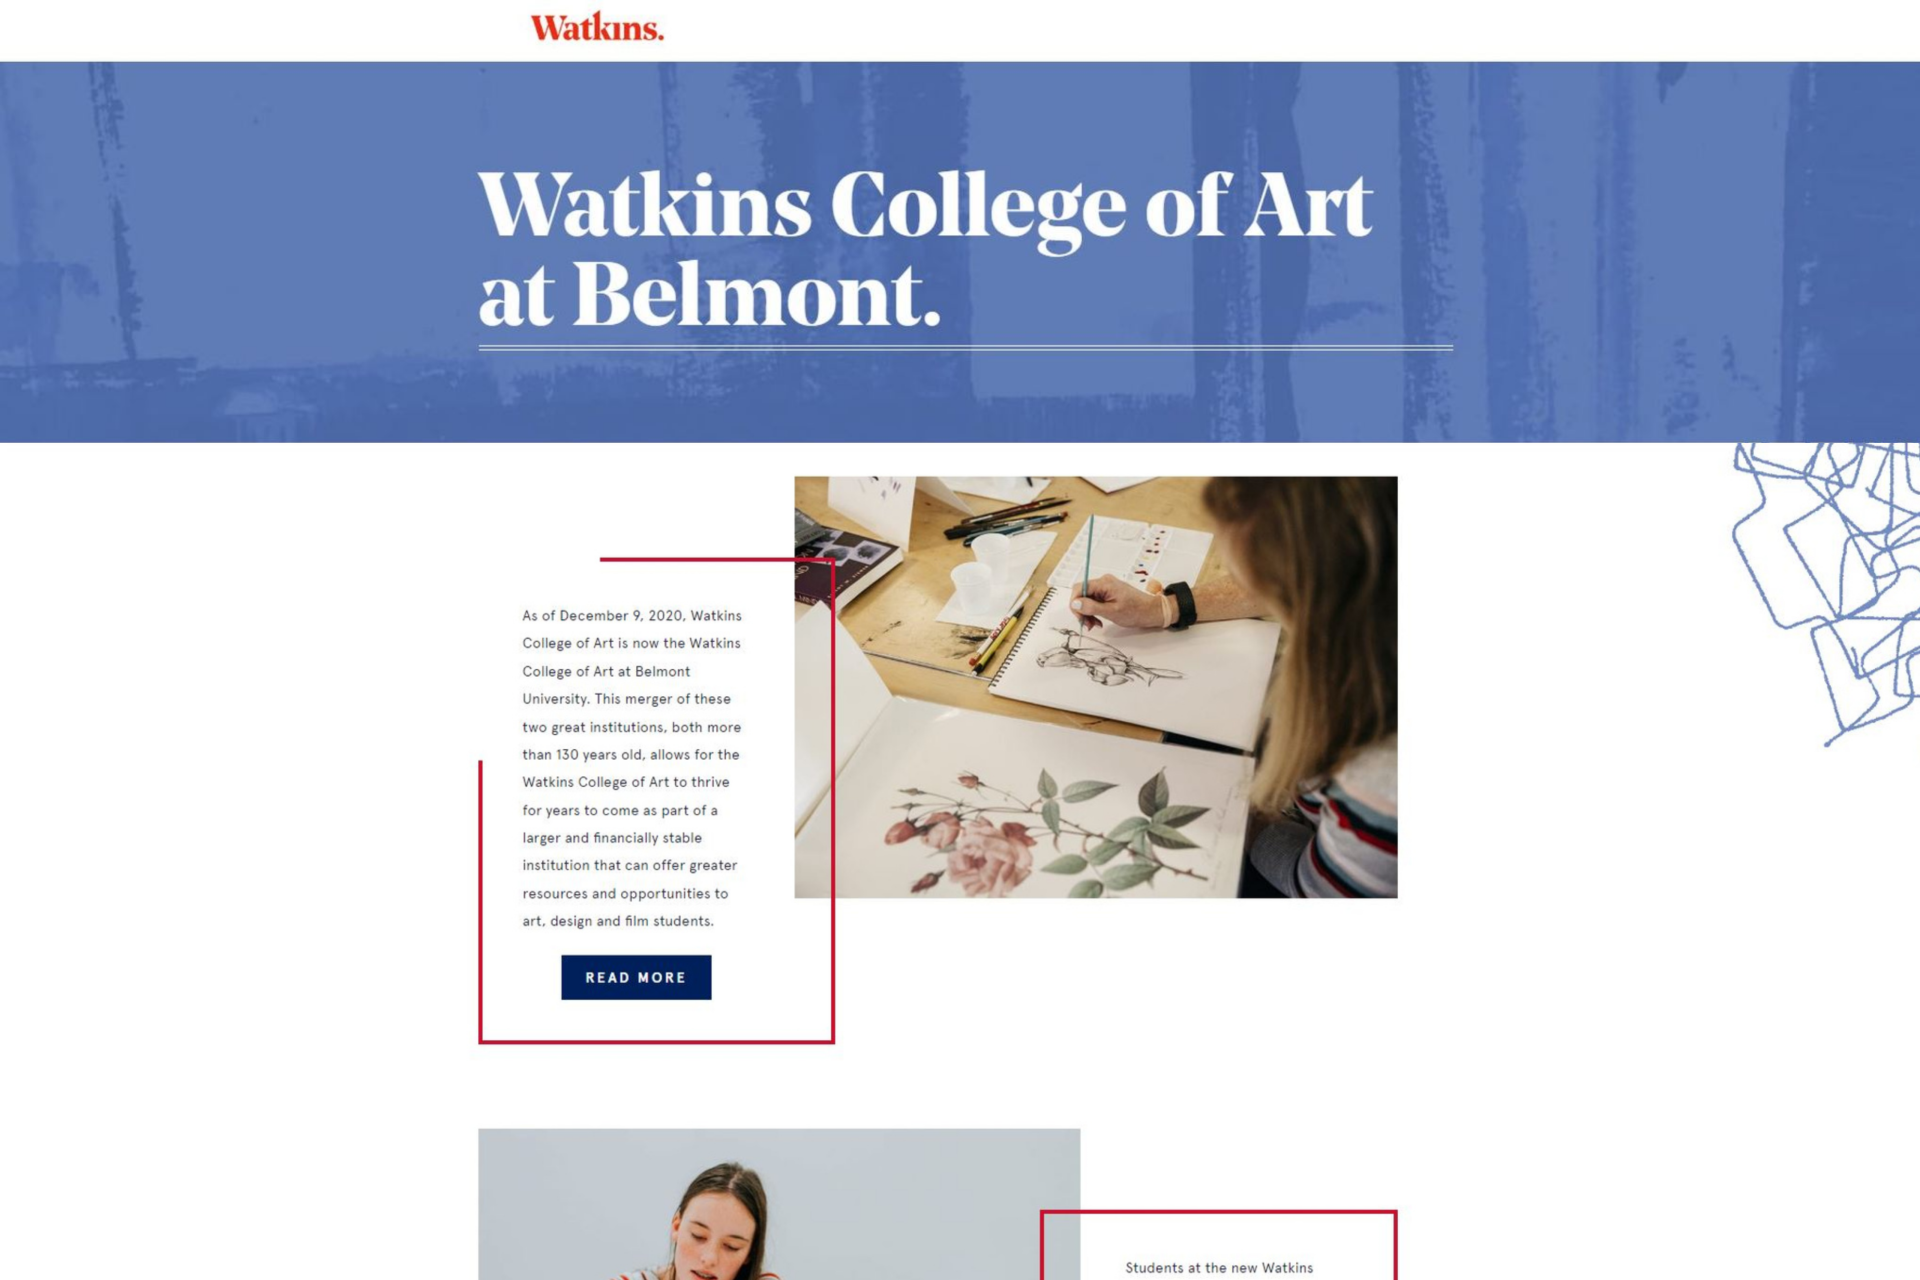 6. Watkins College of Art